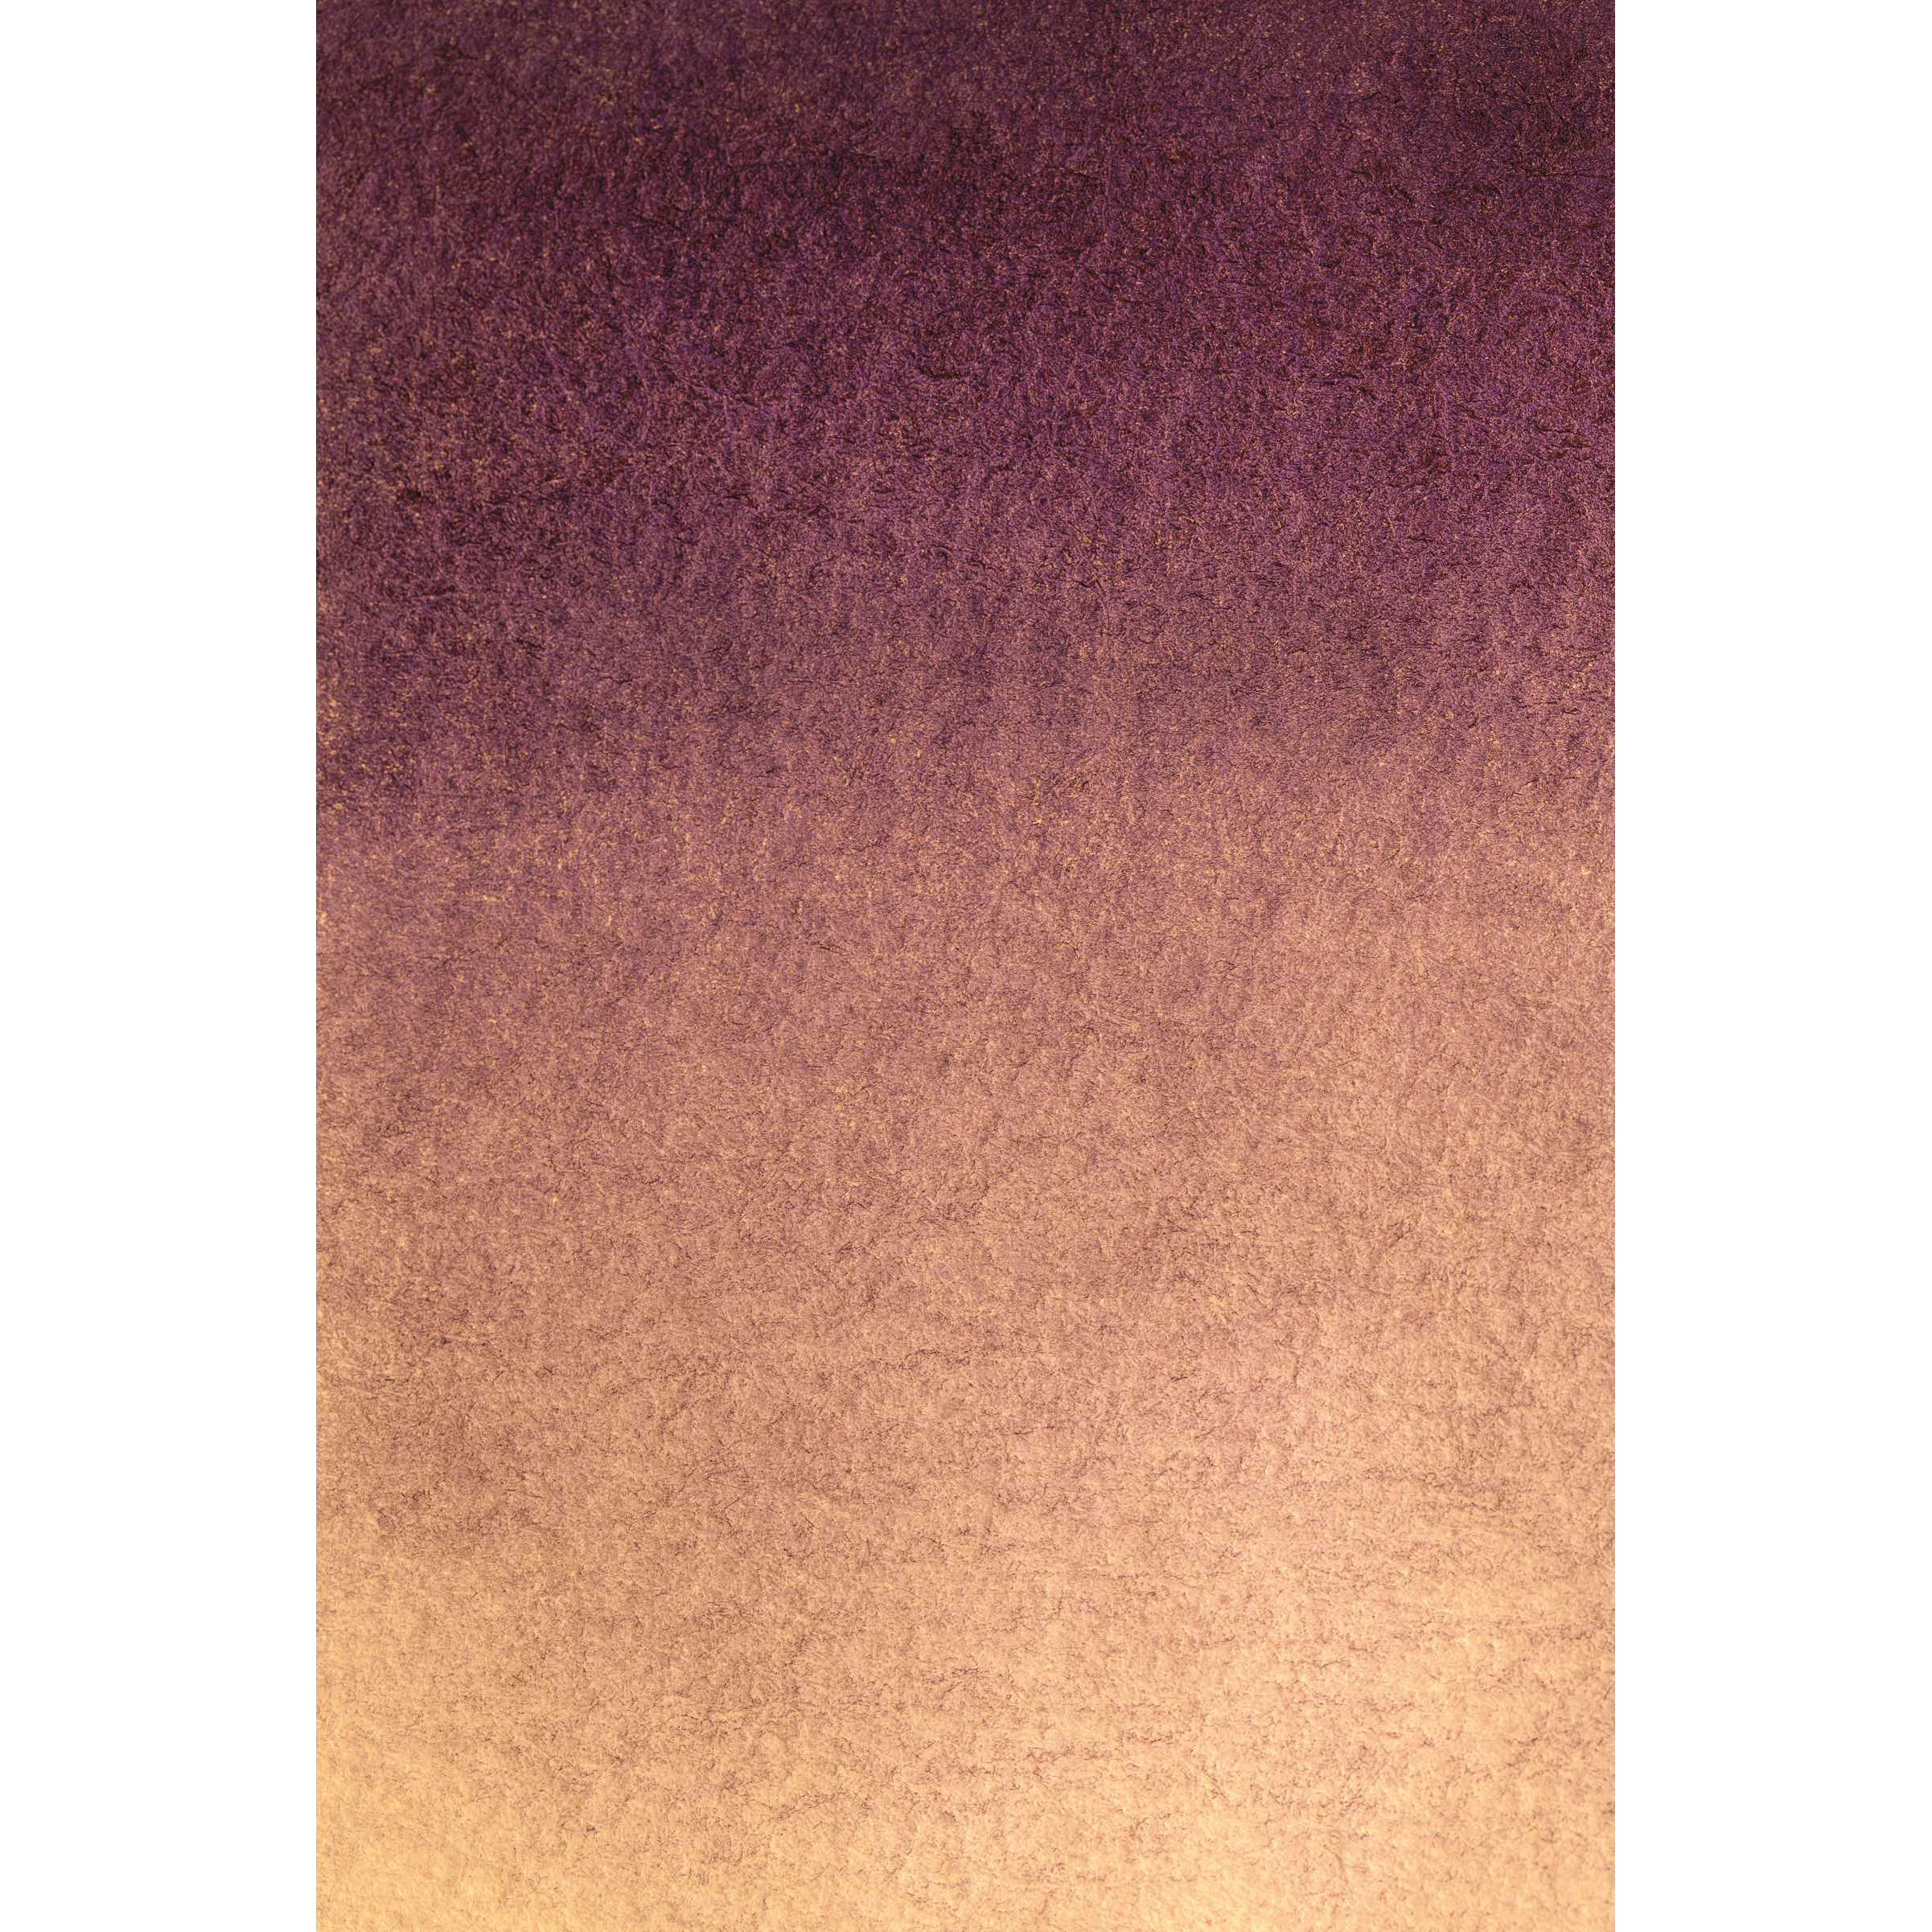 BRESSER Background Cloth with Motif 80 x 120 cm - Purple Beige